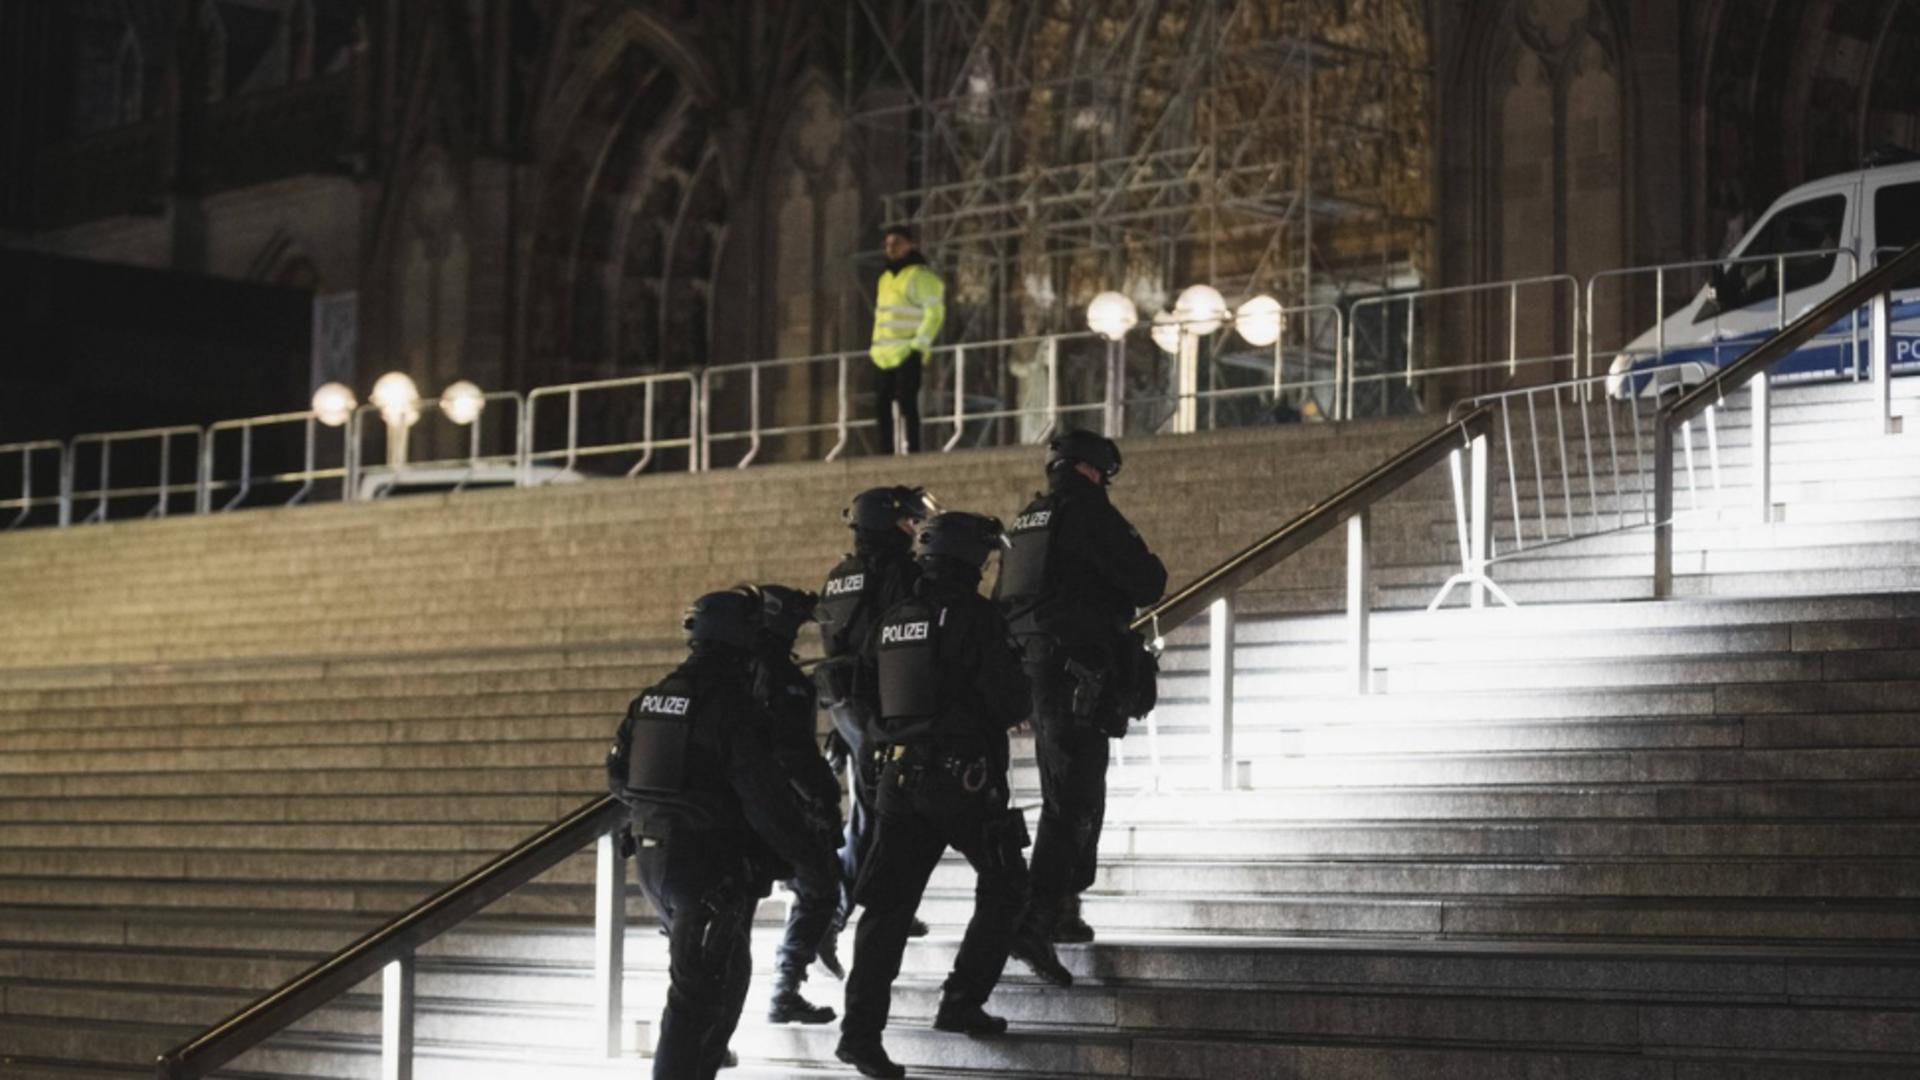 Atac armat dejucat, în Germania. Cine sunt cei trei islamiști care voiau să arunce în aer catedrala din Koln, de Anul Nou